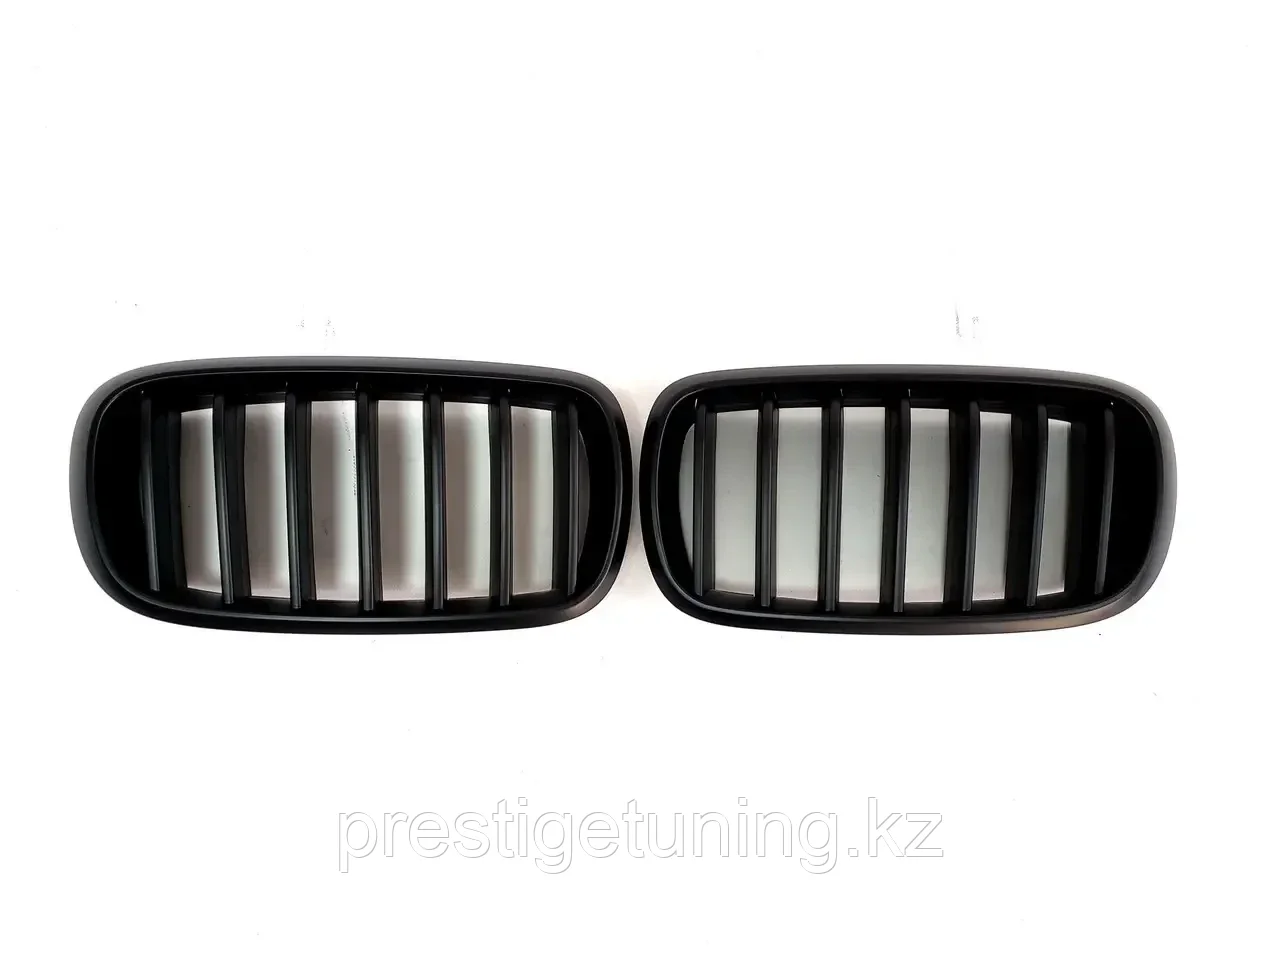 Решетка радиатора на X5 (F15) 2013-18 тюнинг ноздри (Черный цвет), фото 1